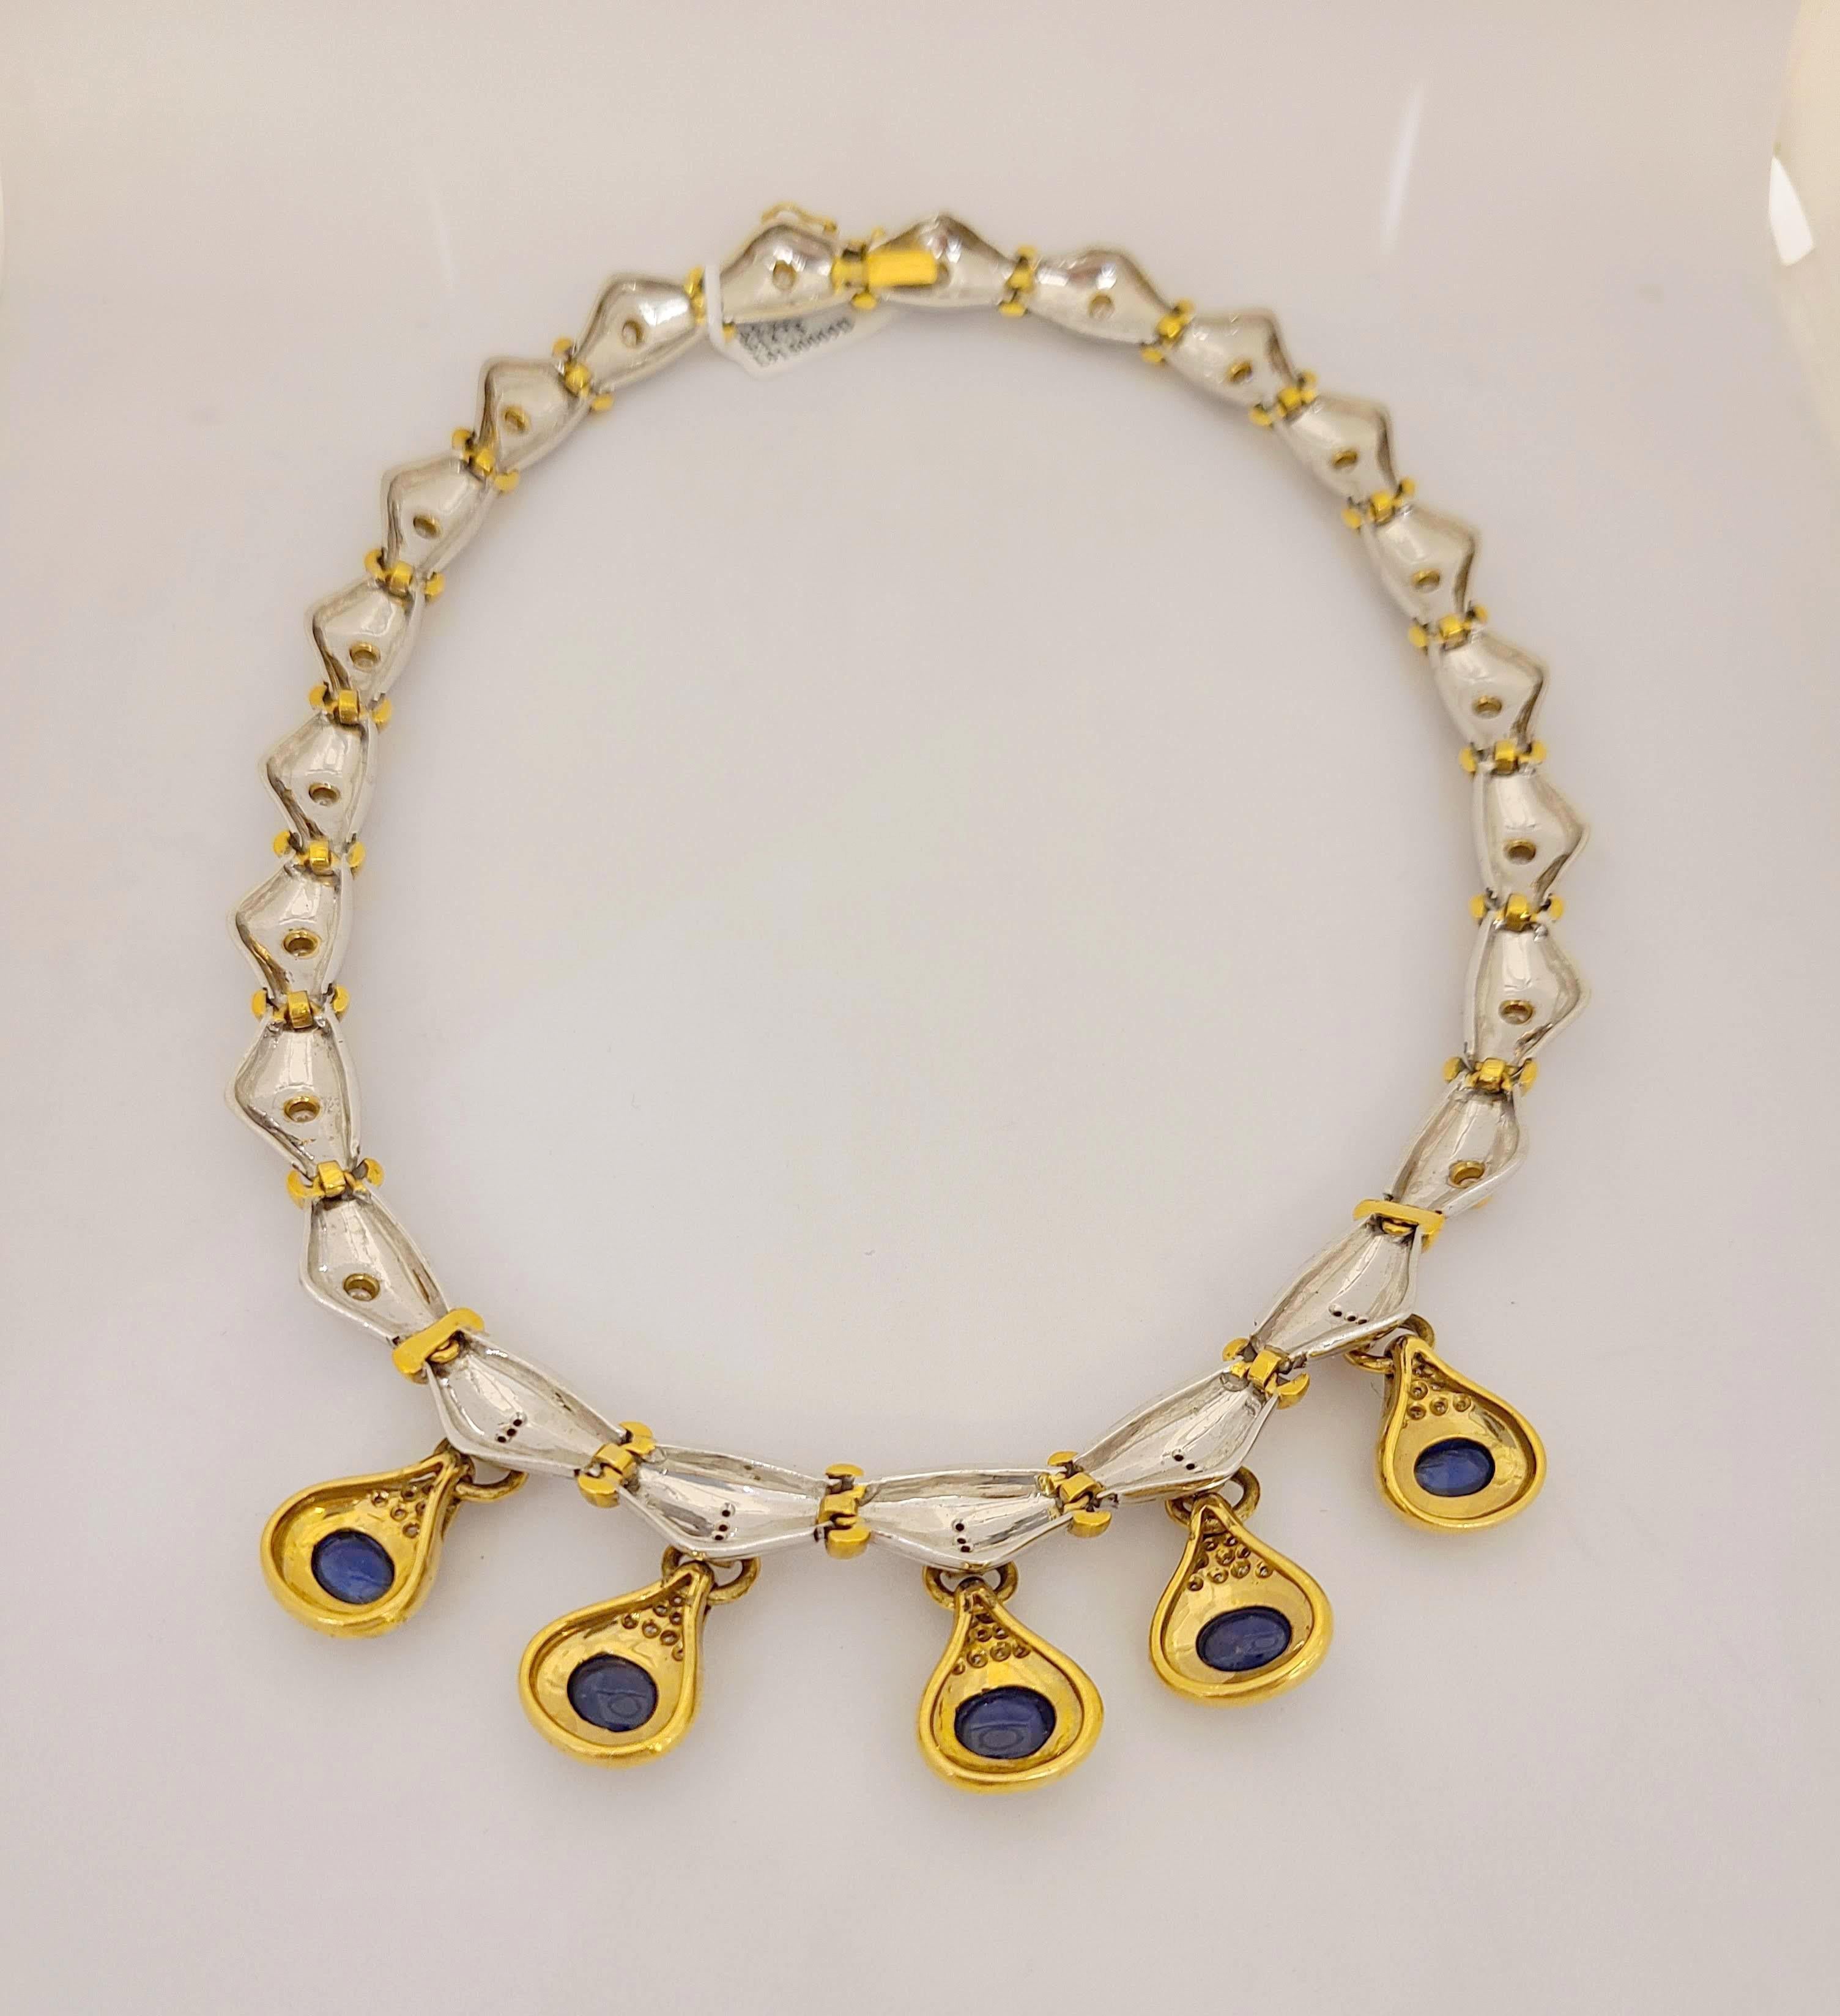 Diese schöne Halskette besteht aus 5 ovalen blauen Saphir-Cabochons, die jeweils in eine Fassung aus 18-karätigem Gelbgold eingefasst sind, die mit runden Brillanten akzentuiert ist. Die Saphire hängen an einer Halskette mit geriffelten Abschnitten